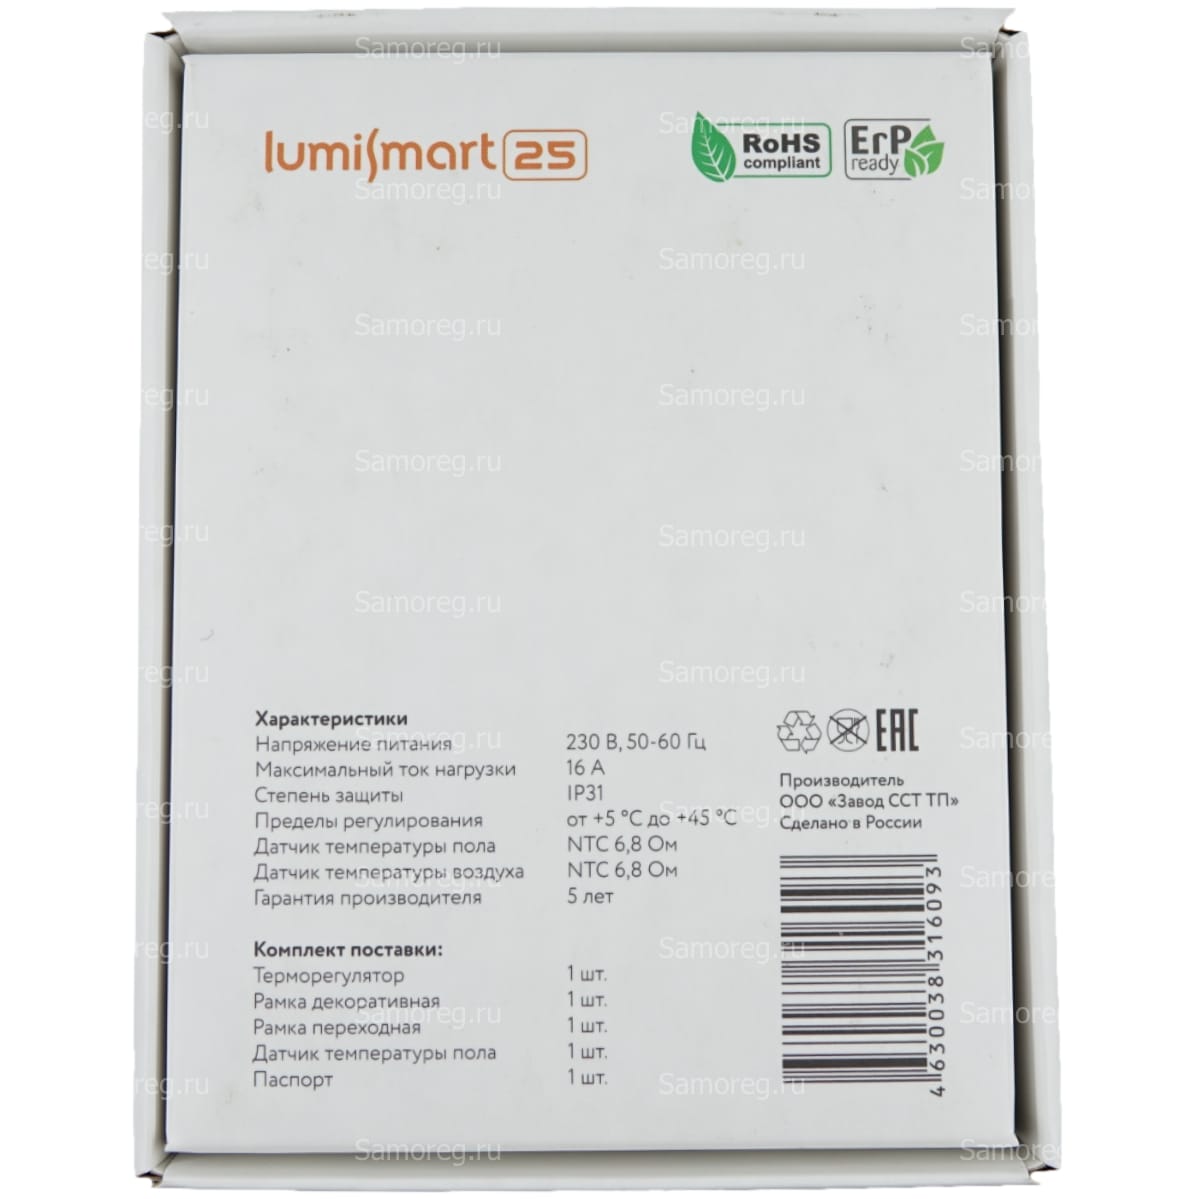 Терморегулятор Теплолюкс LumiSmart 25 белый